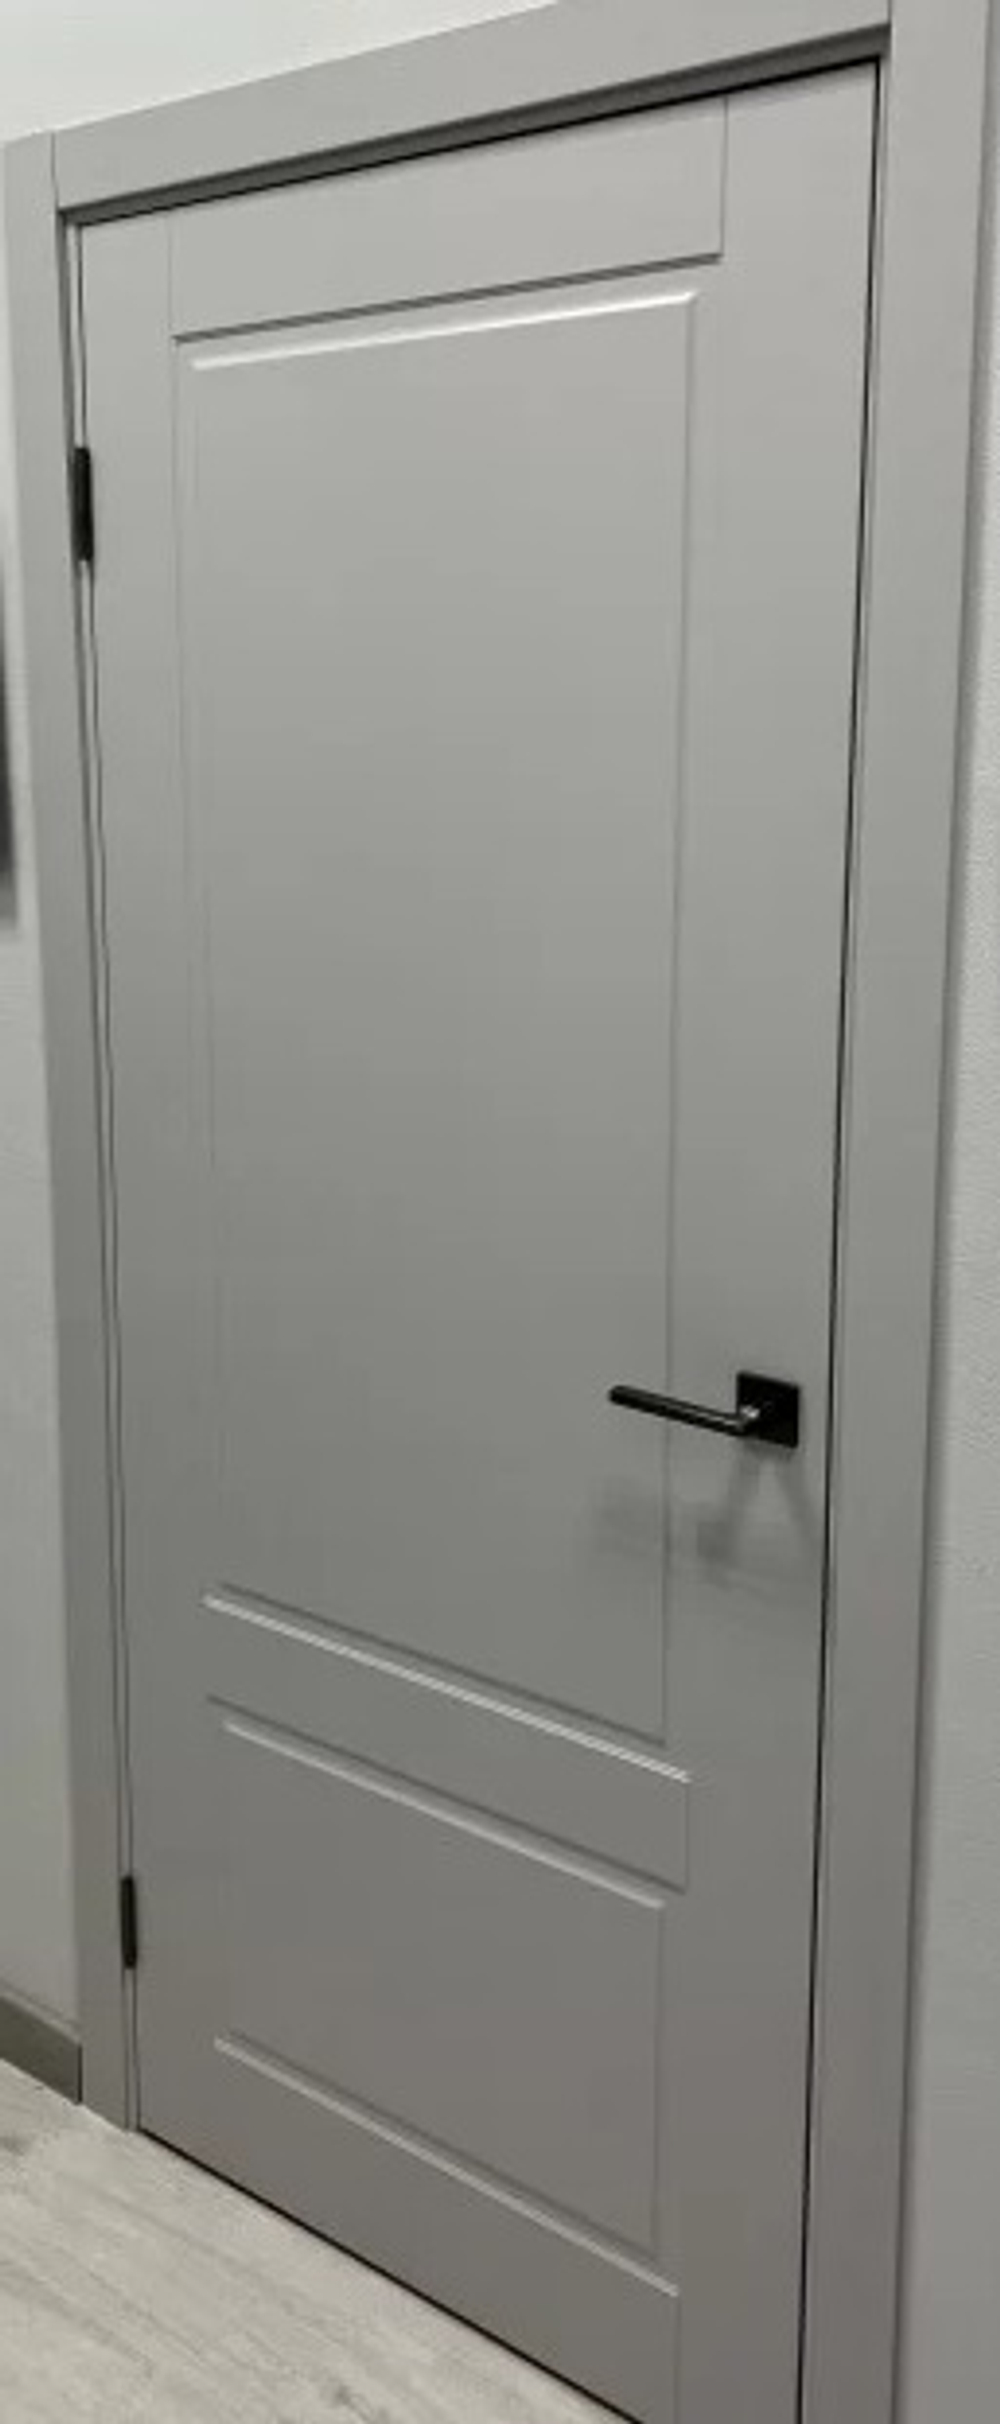 Межкомнатная дверь VFD (ВФД)  Sheffild (Шеффилд)  Cotton  (эмаль свето-серая)